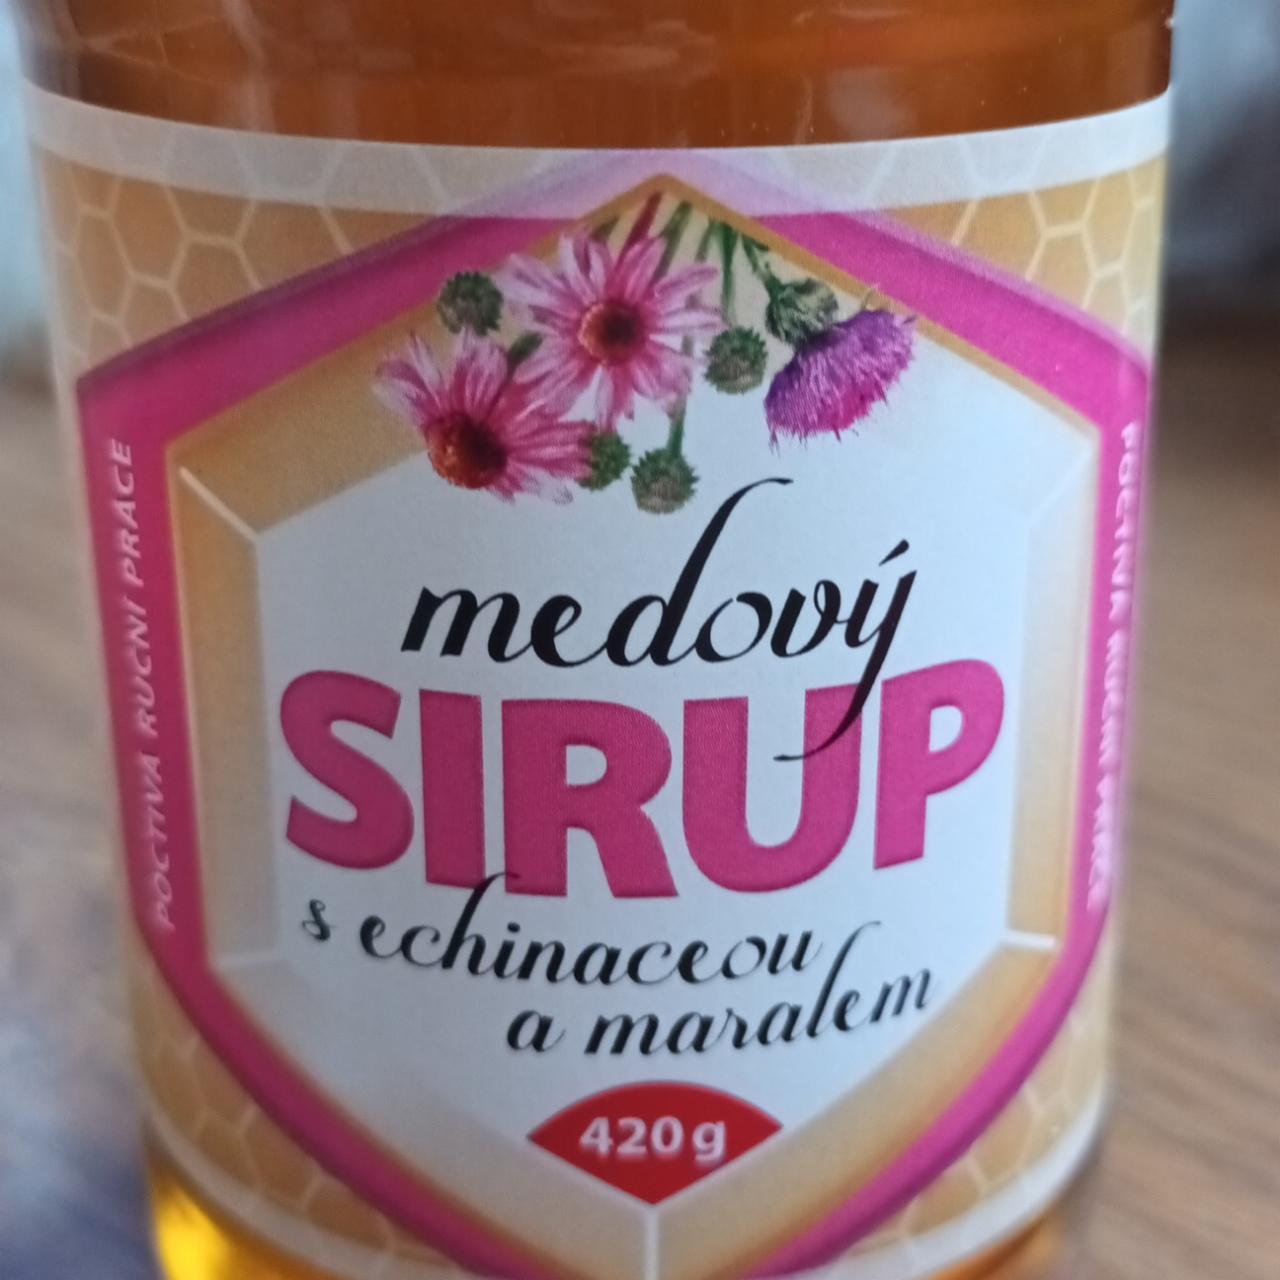 Fotografie - Medový sirup s echinaceou a maralem Schellex